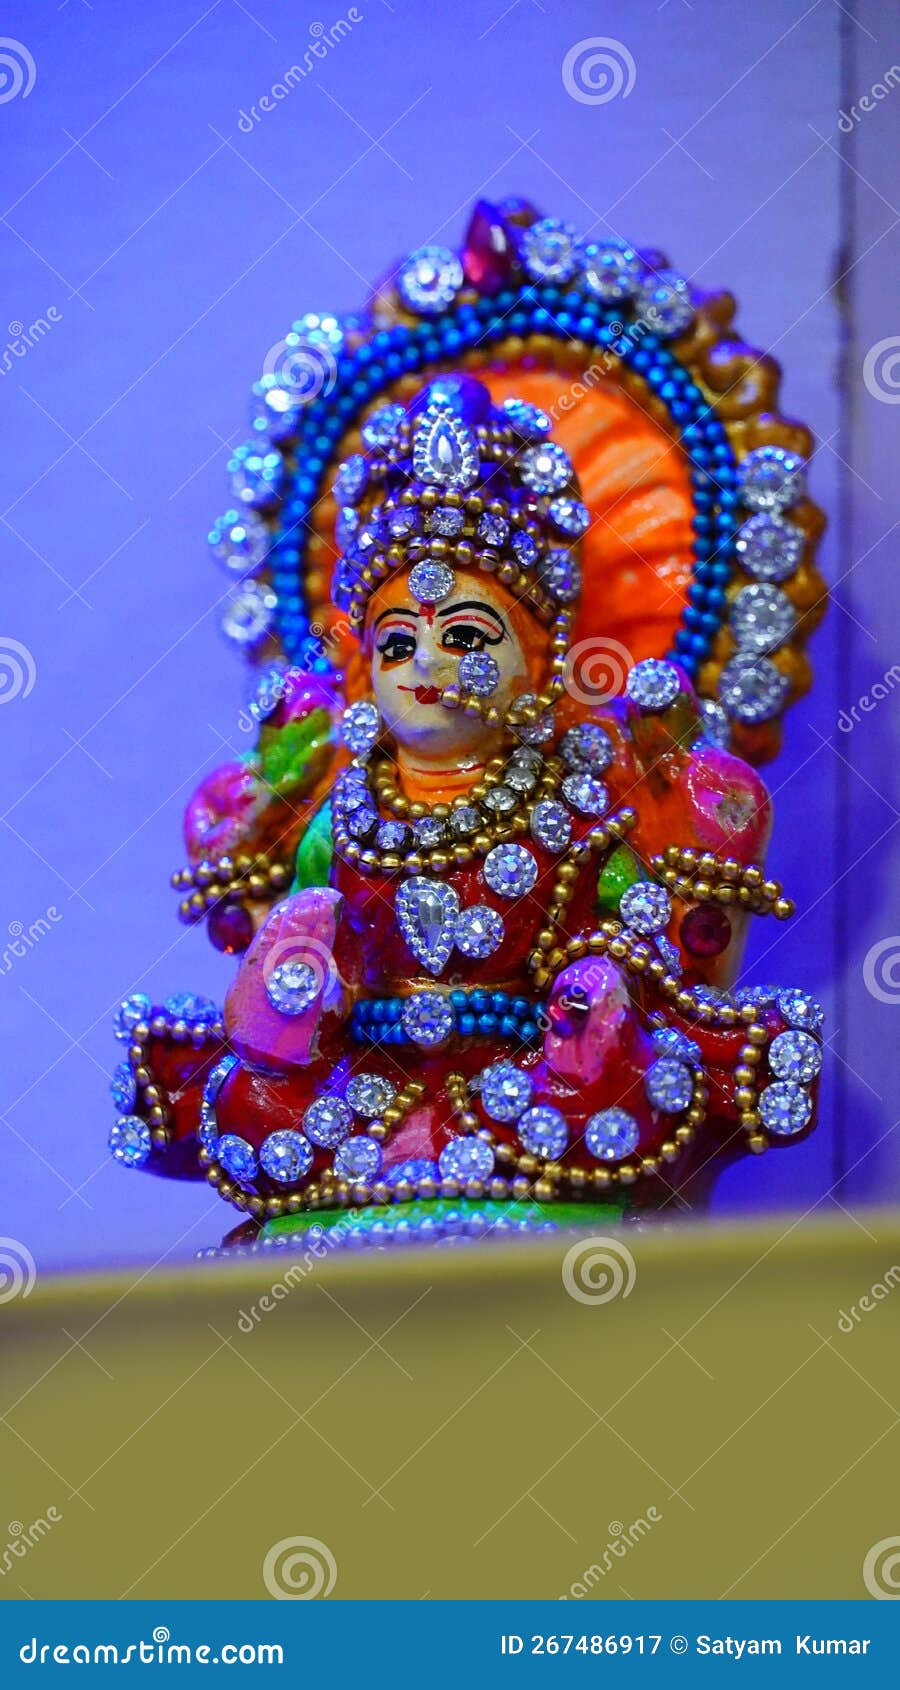 Indian Goddess Laxmi Devi Statue Diwali Image Stock Image - Image ...